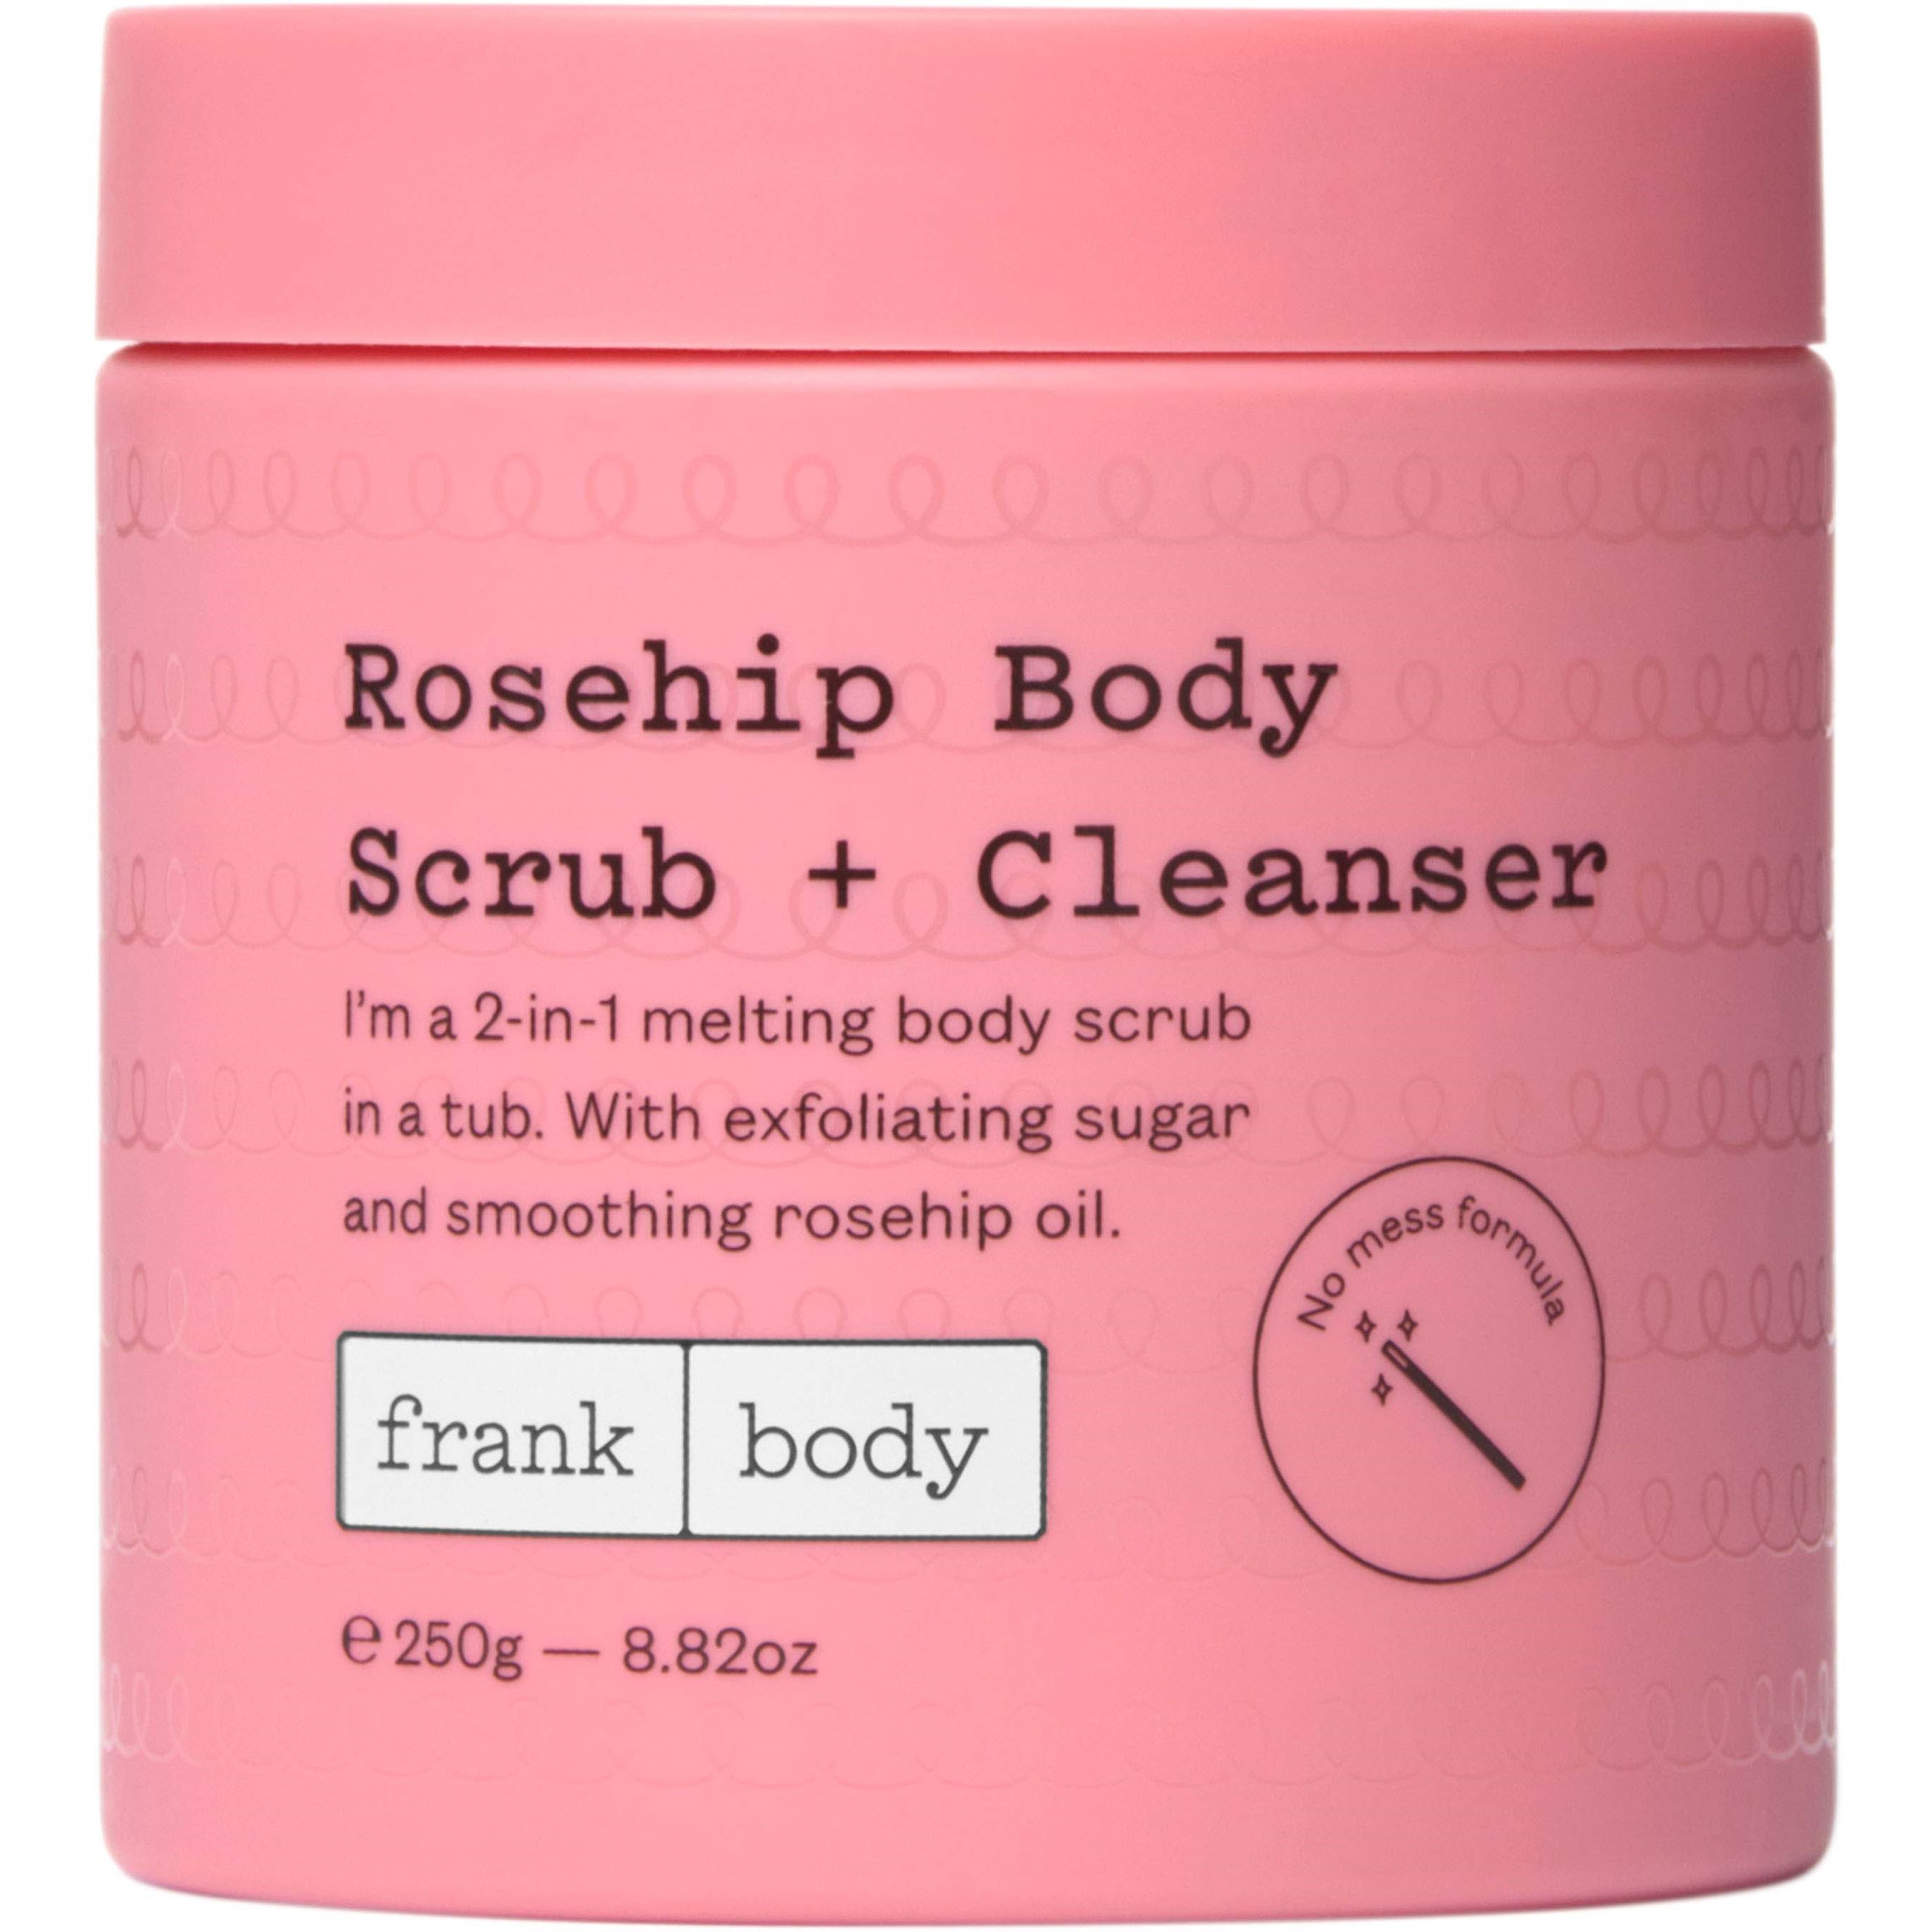 Bilde av Frank Body Body Rosehip Body Scrub + Cleanser 250 G